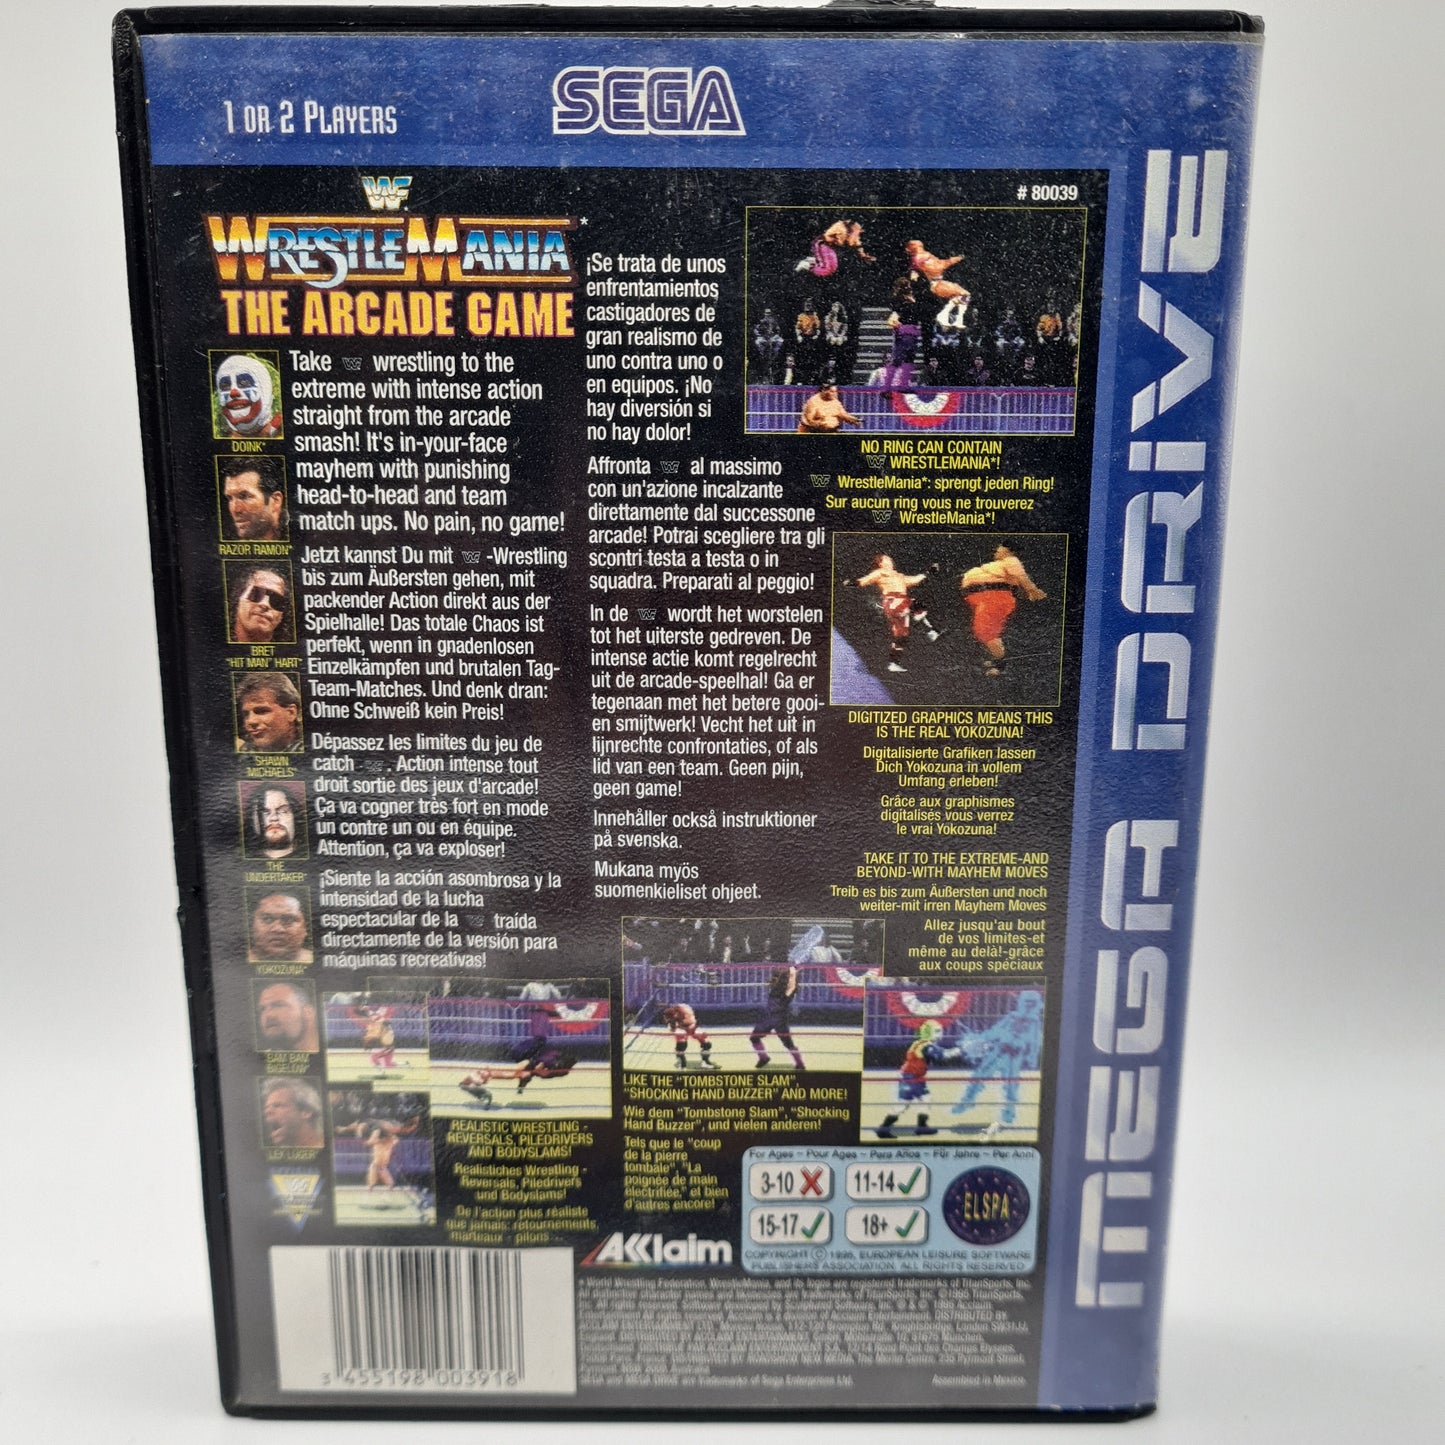 WWF Wrestlemania The Arcade Game Sega Megadrive W3